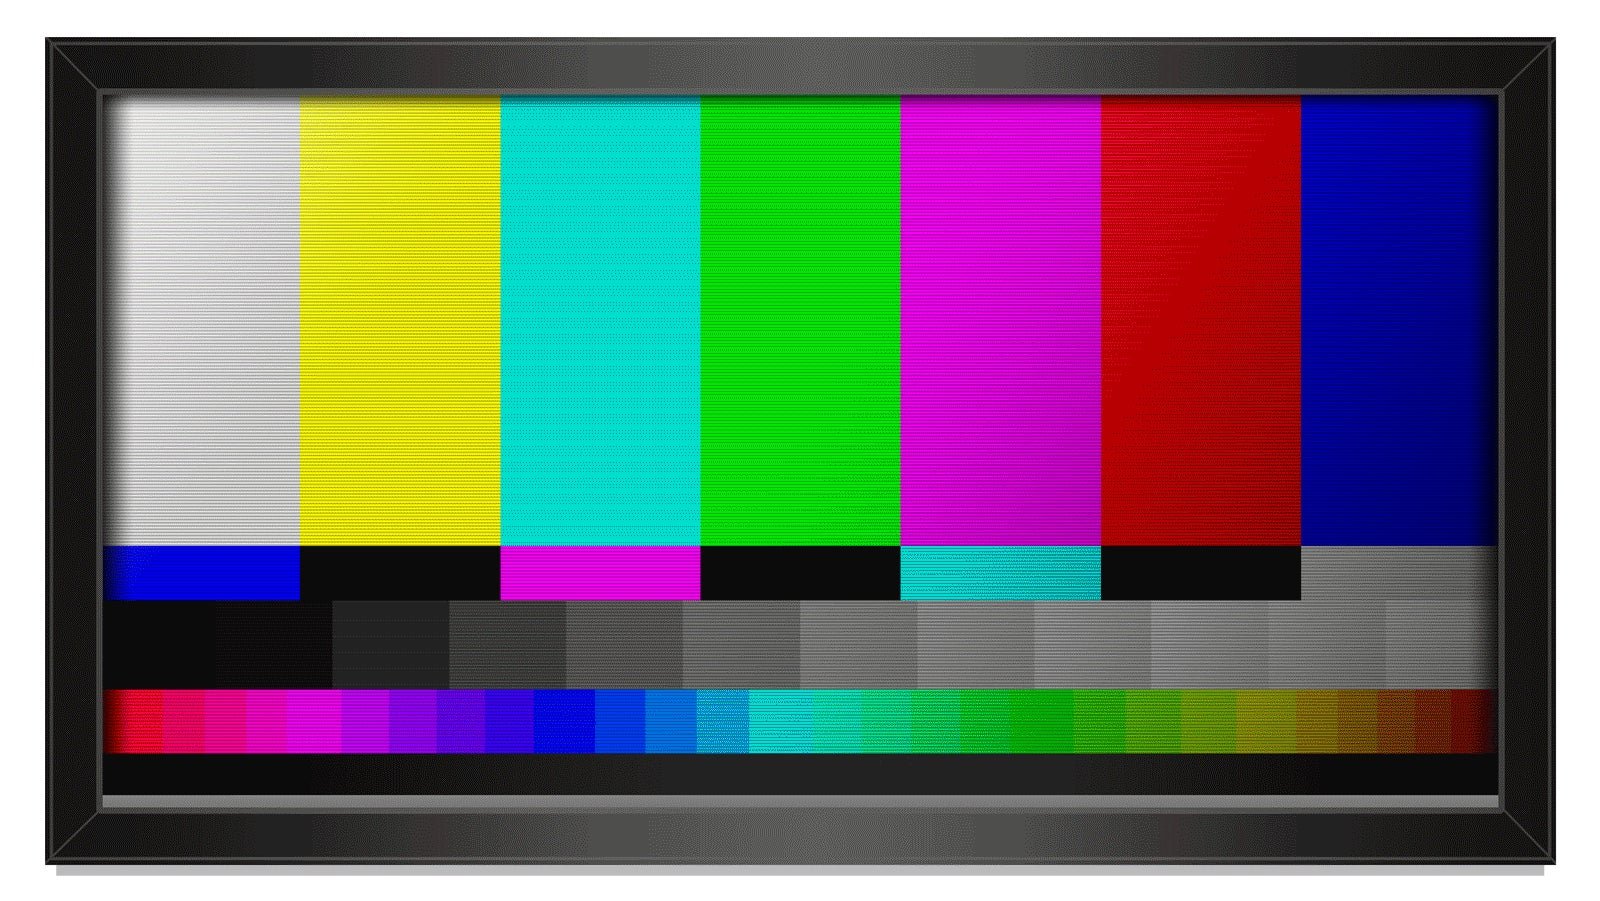 Зависает изображение телевизоре. Разноцветный экран. Экран телевизора. Экран с цветными полосками. Экран неработающего телевизора.